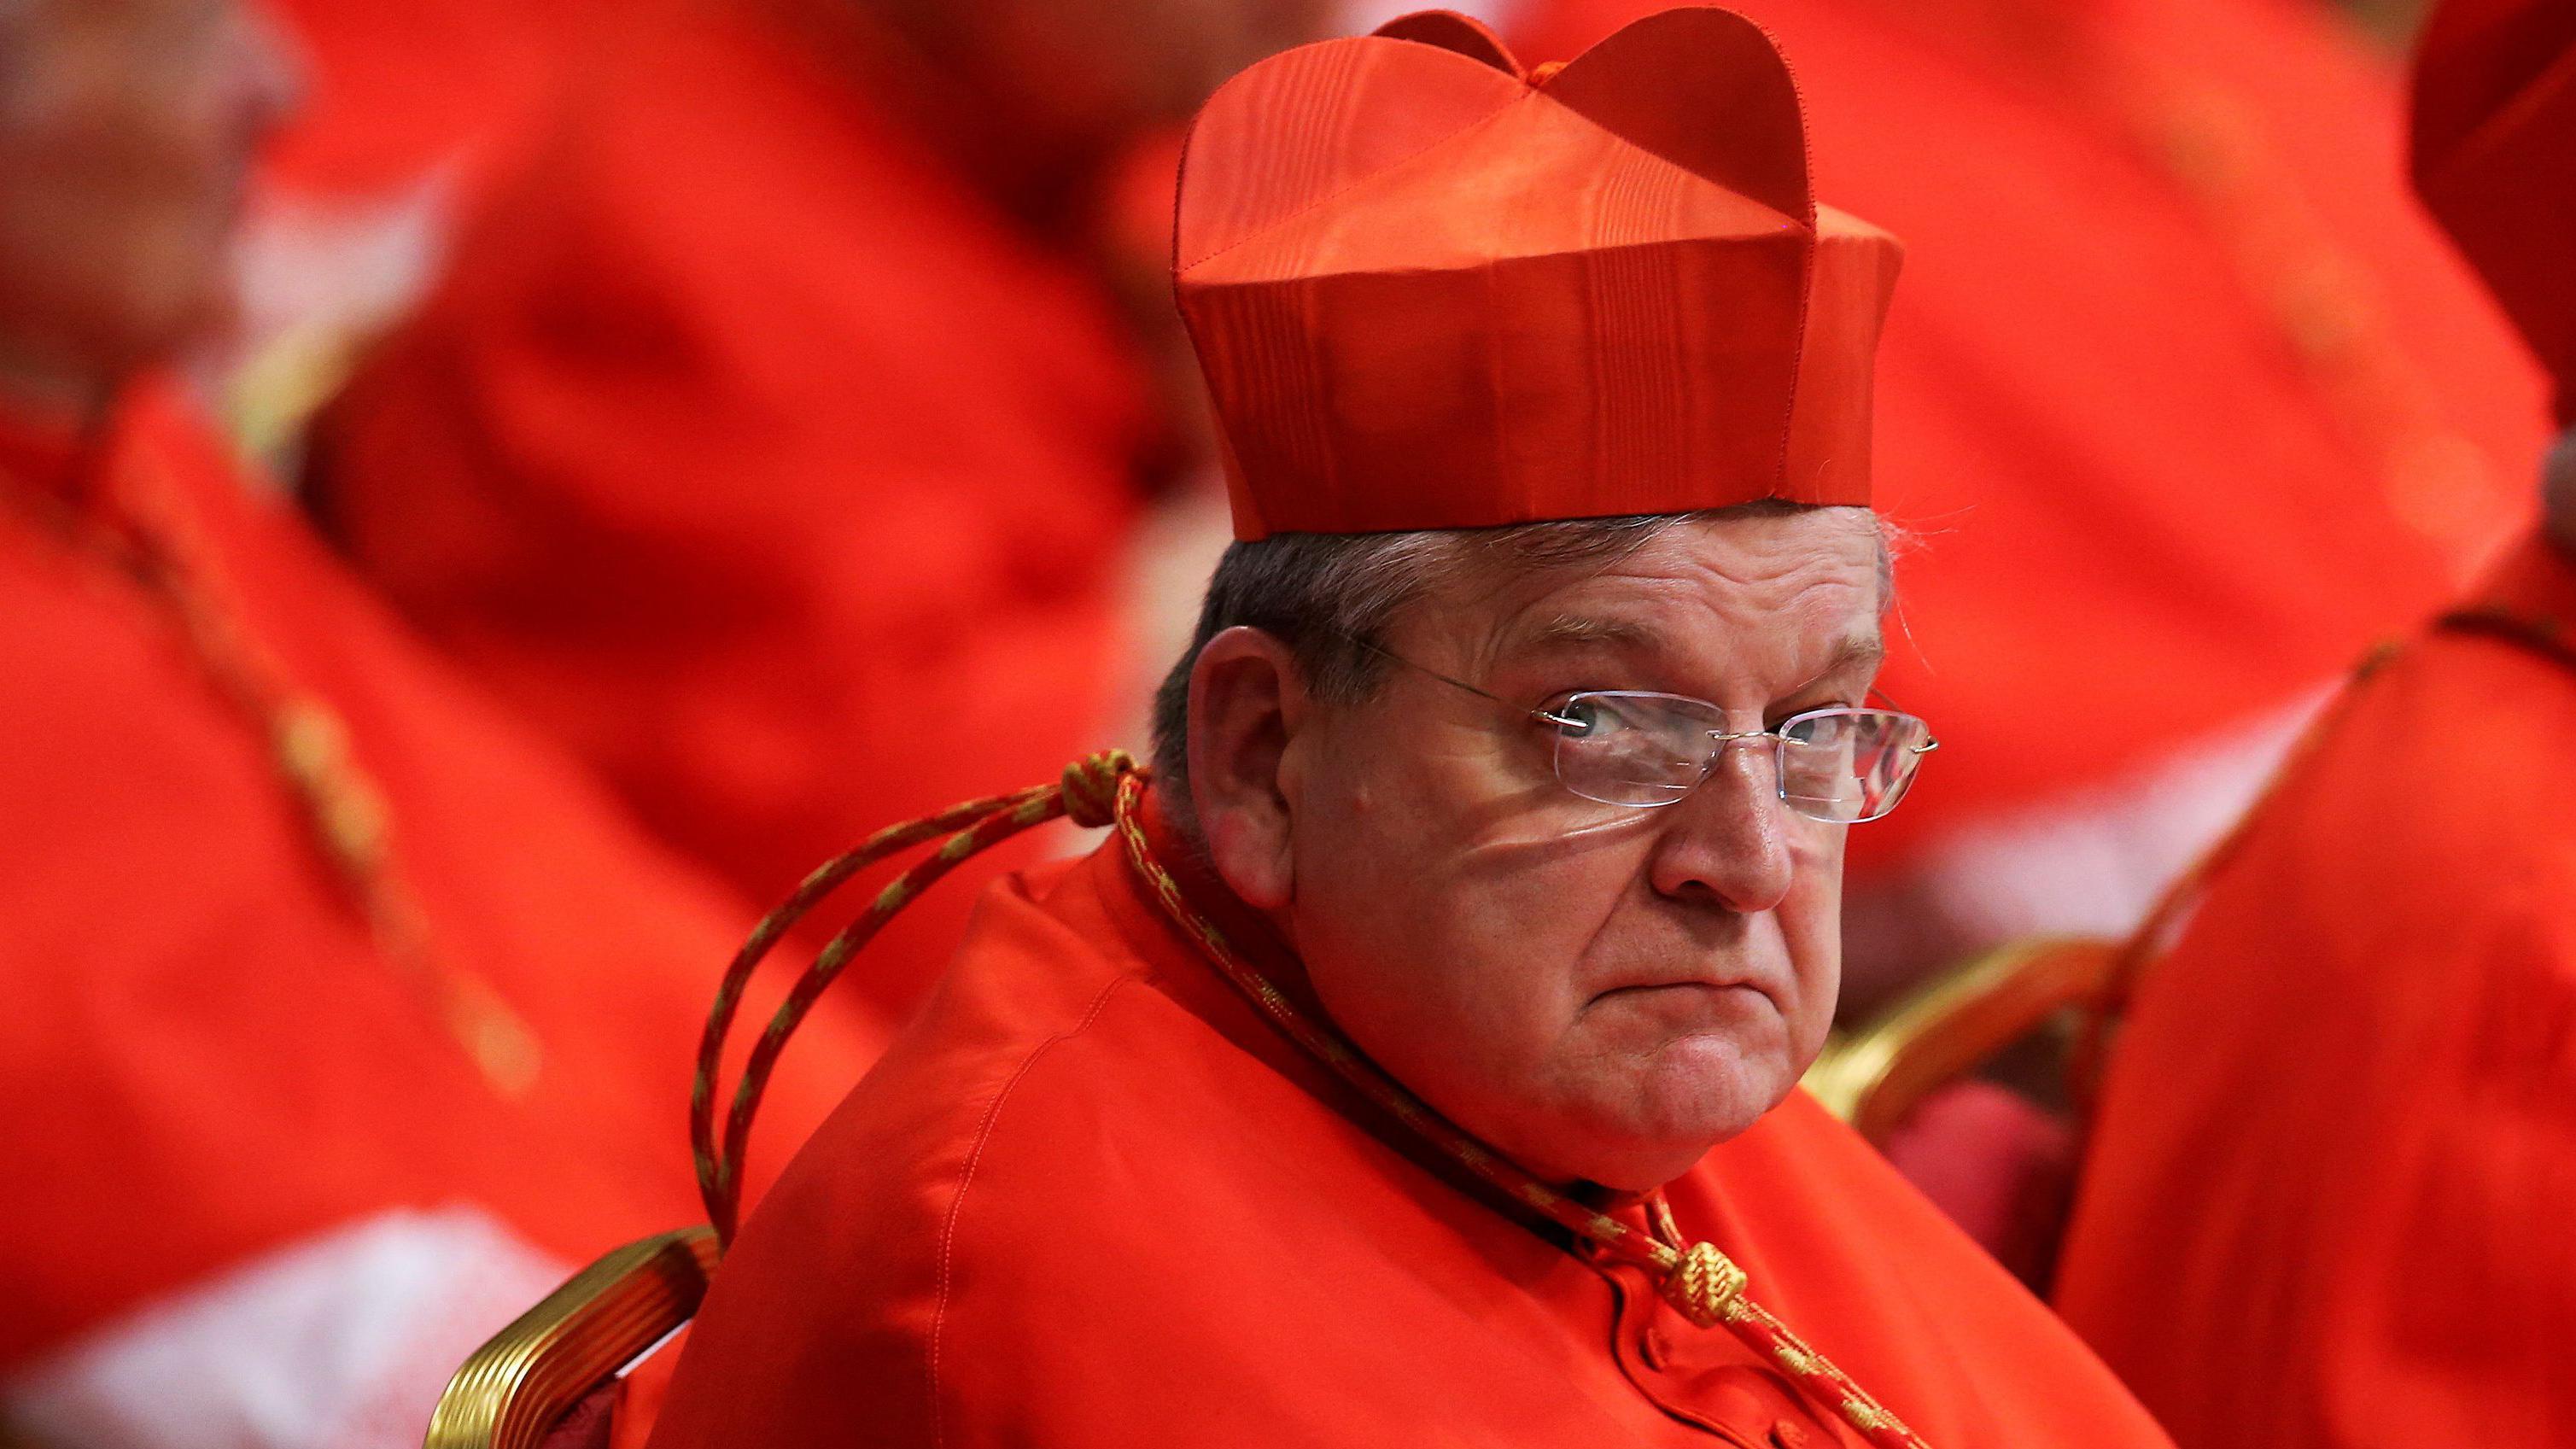 El cardenal estadounidense Raymond Burke ha sido abiertamente crítico con el papa Francisco.

GETTY IMAGES
